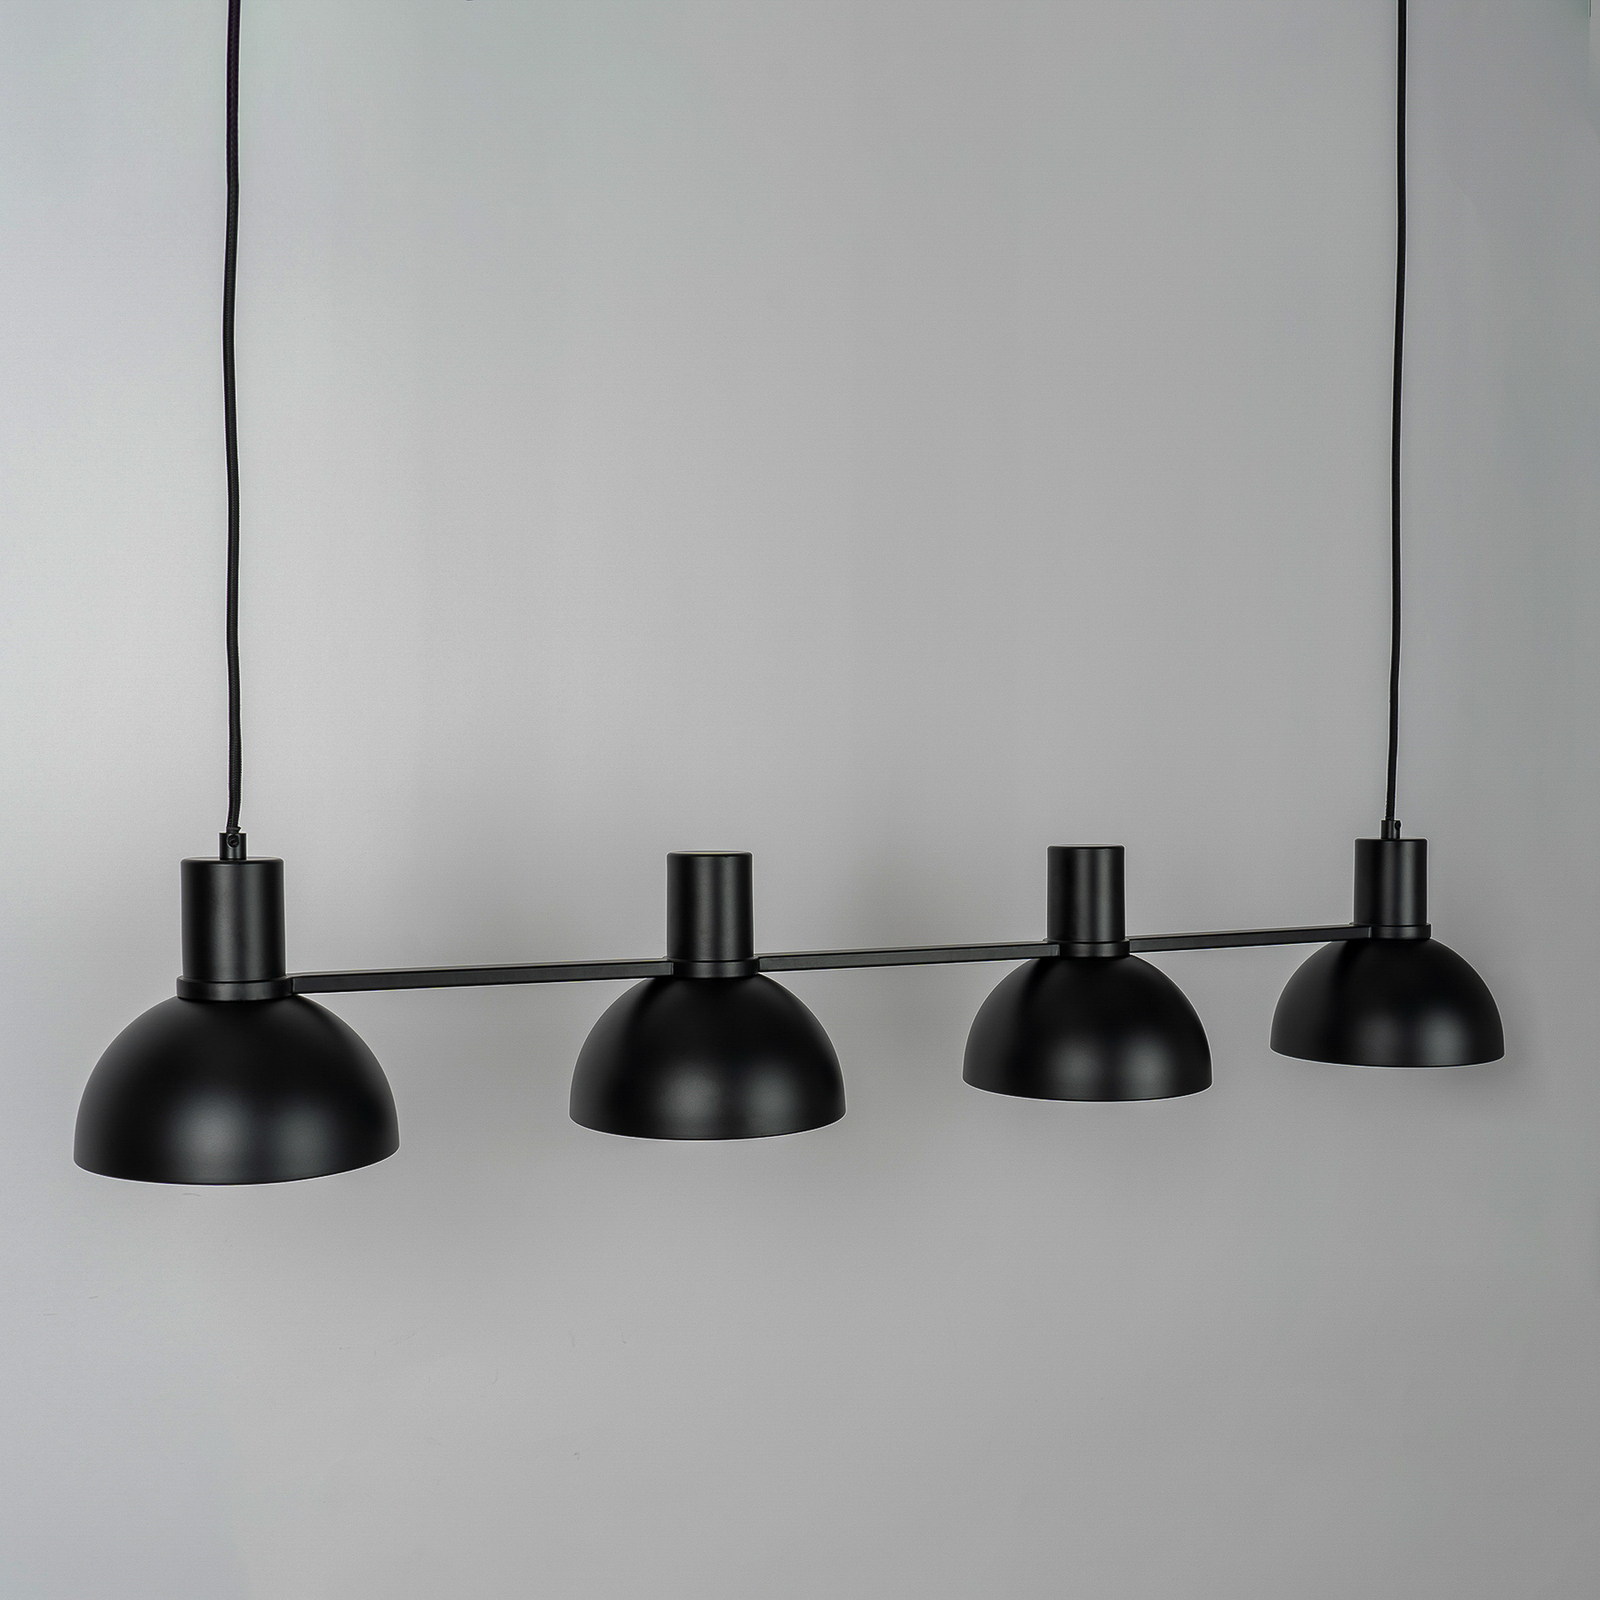 Lucande Mostrid hanging light, black, 4-bulb